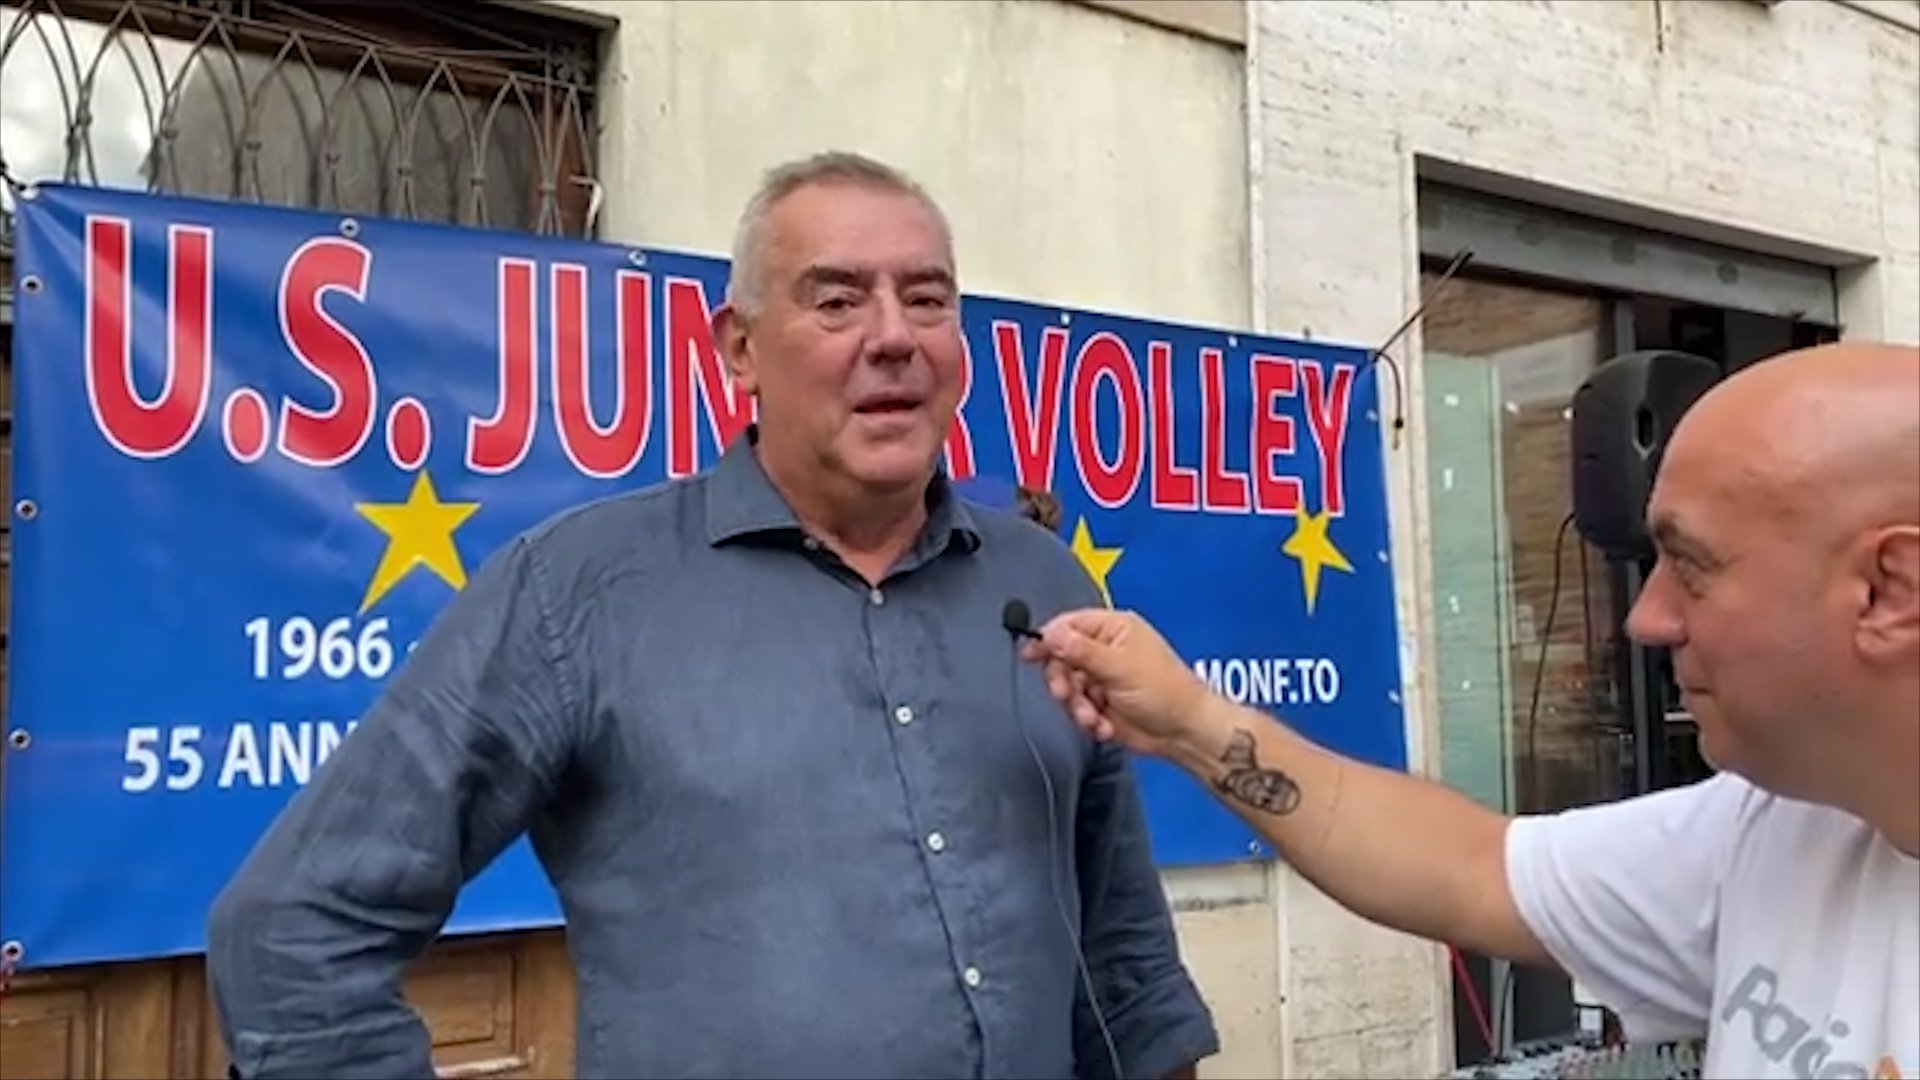 Junior Volley Casale pronta a ripartire: “Stagione del rilancio, speriamo di ritrovare il pubblico”